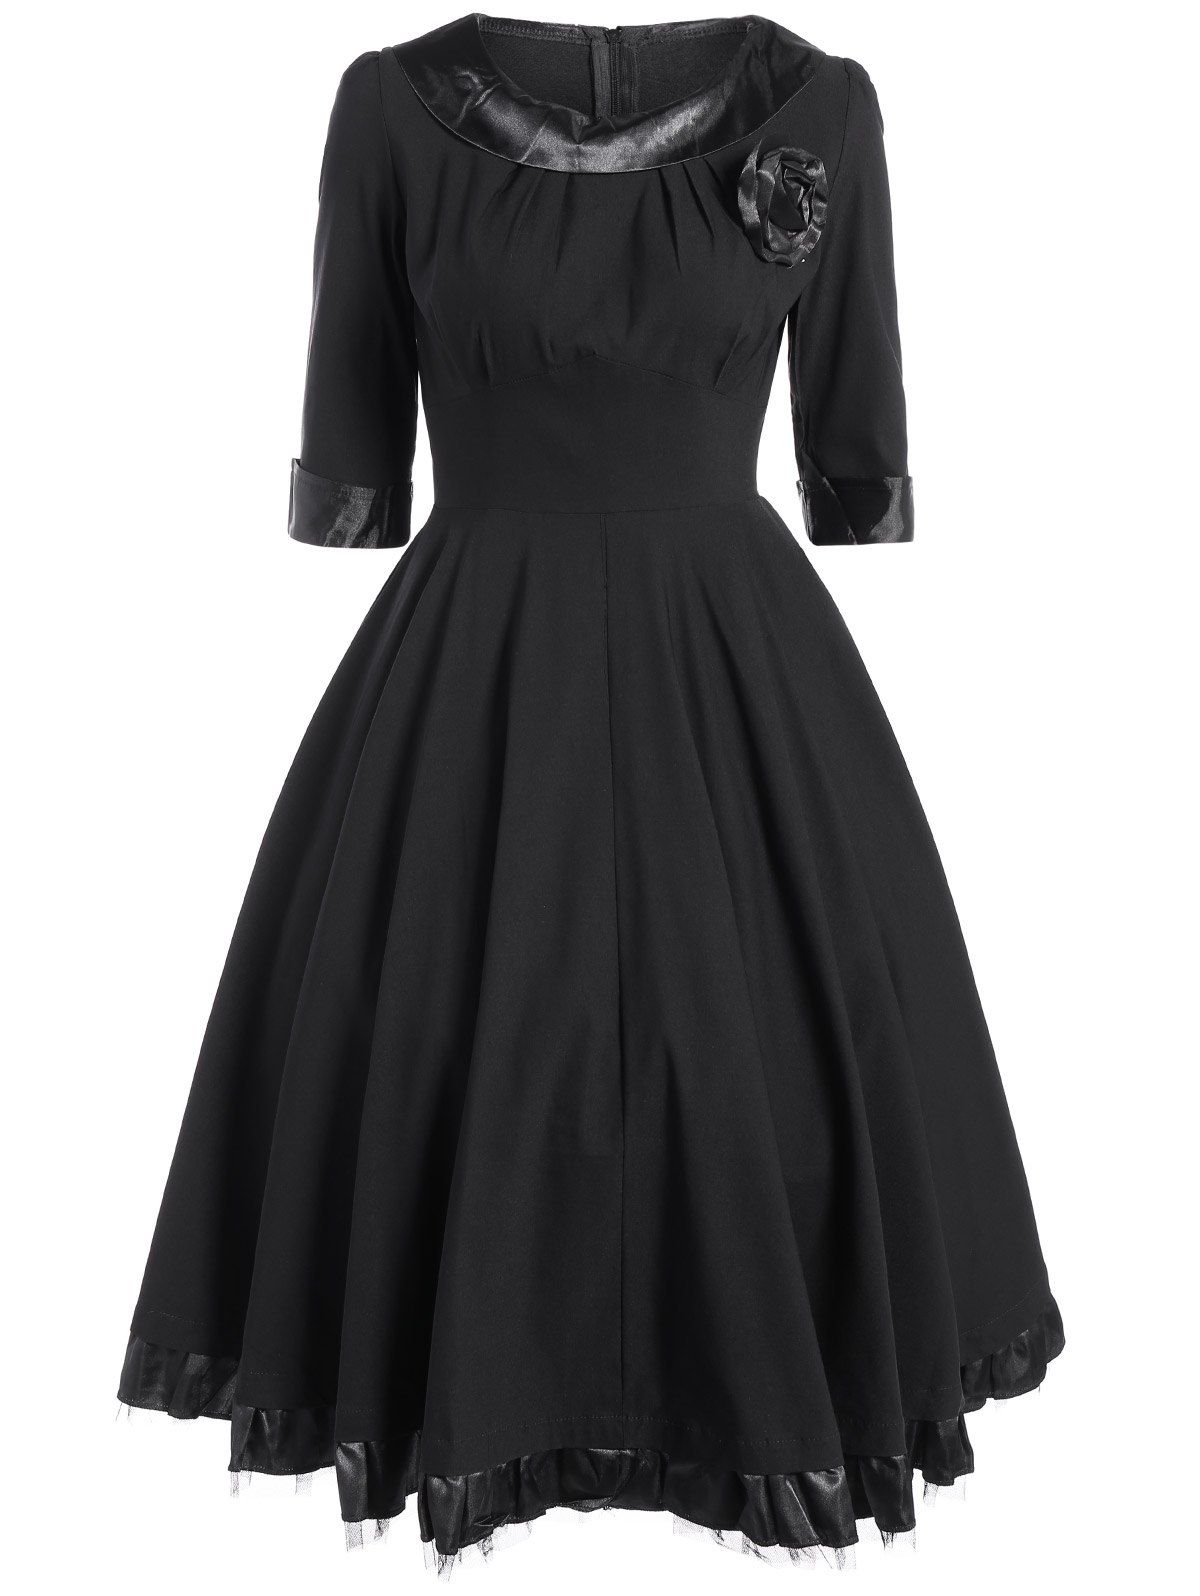 Vintage Tea Length Party Pin Up Dress, BLACK, L in Vintage Dresses ...